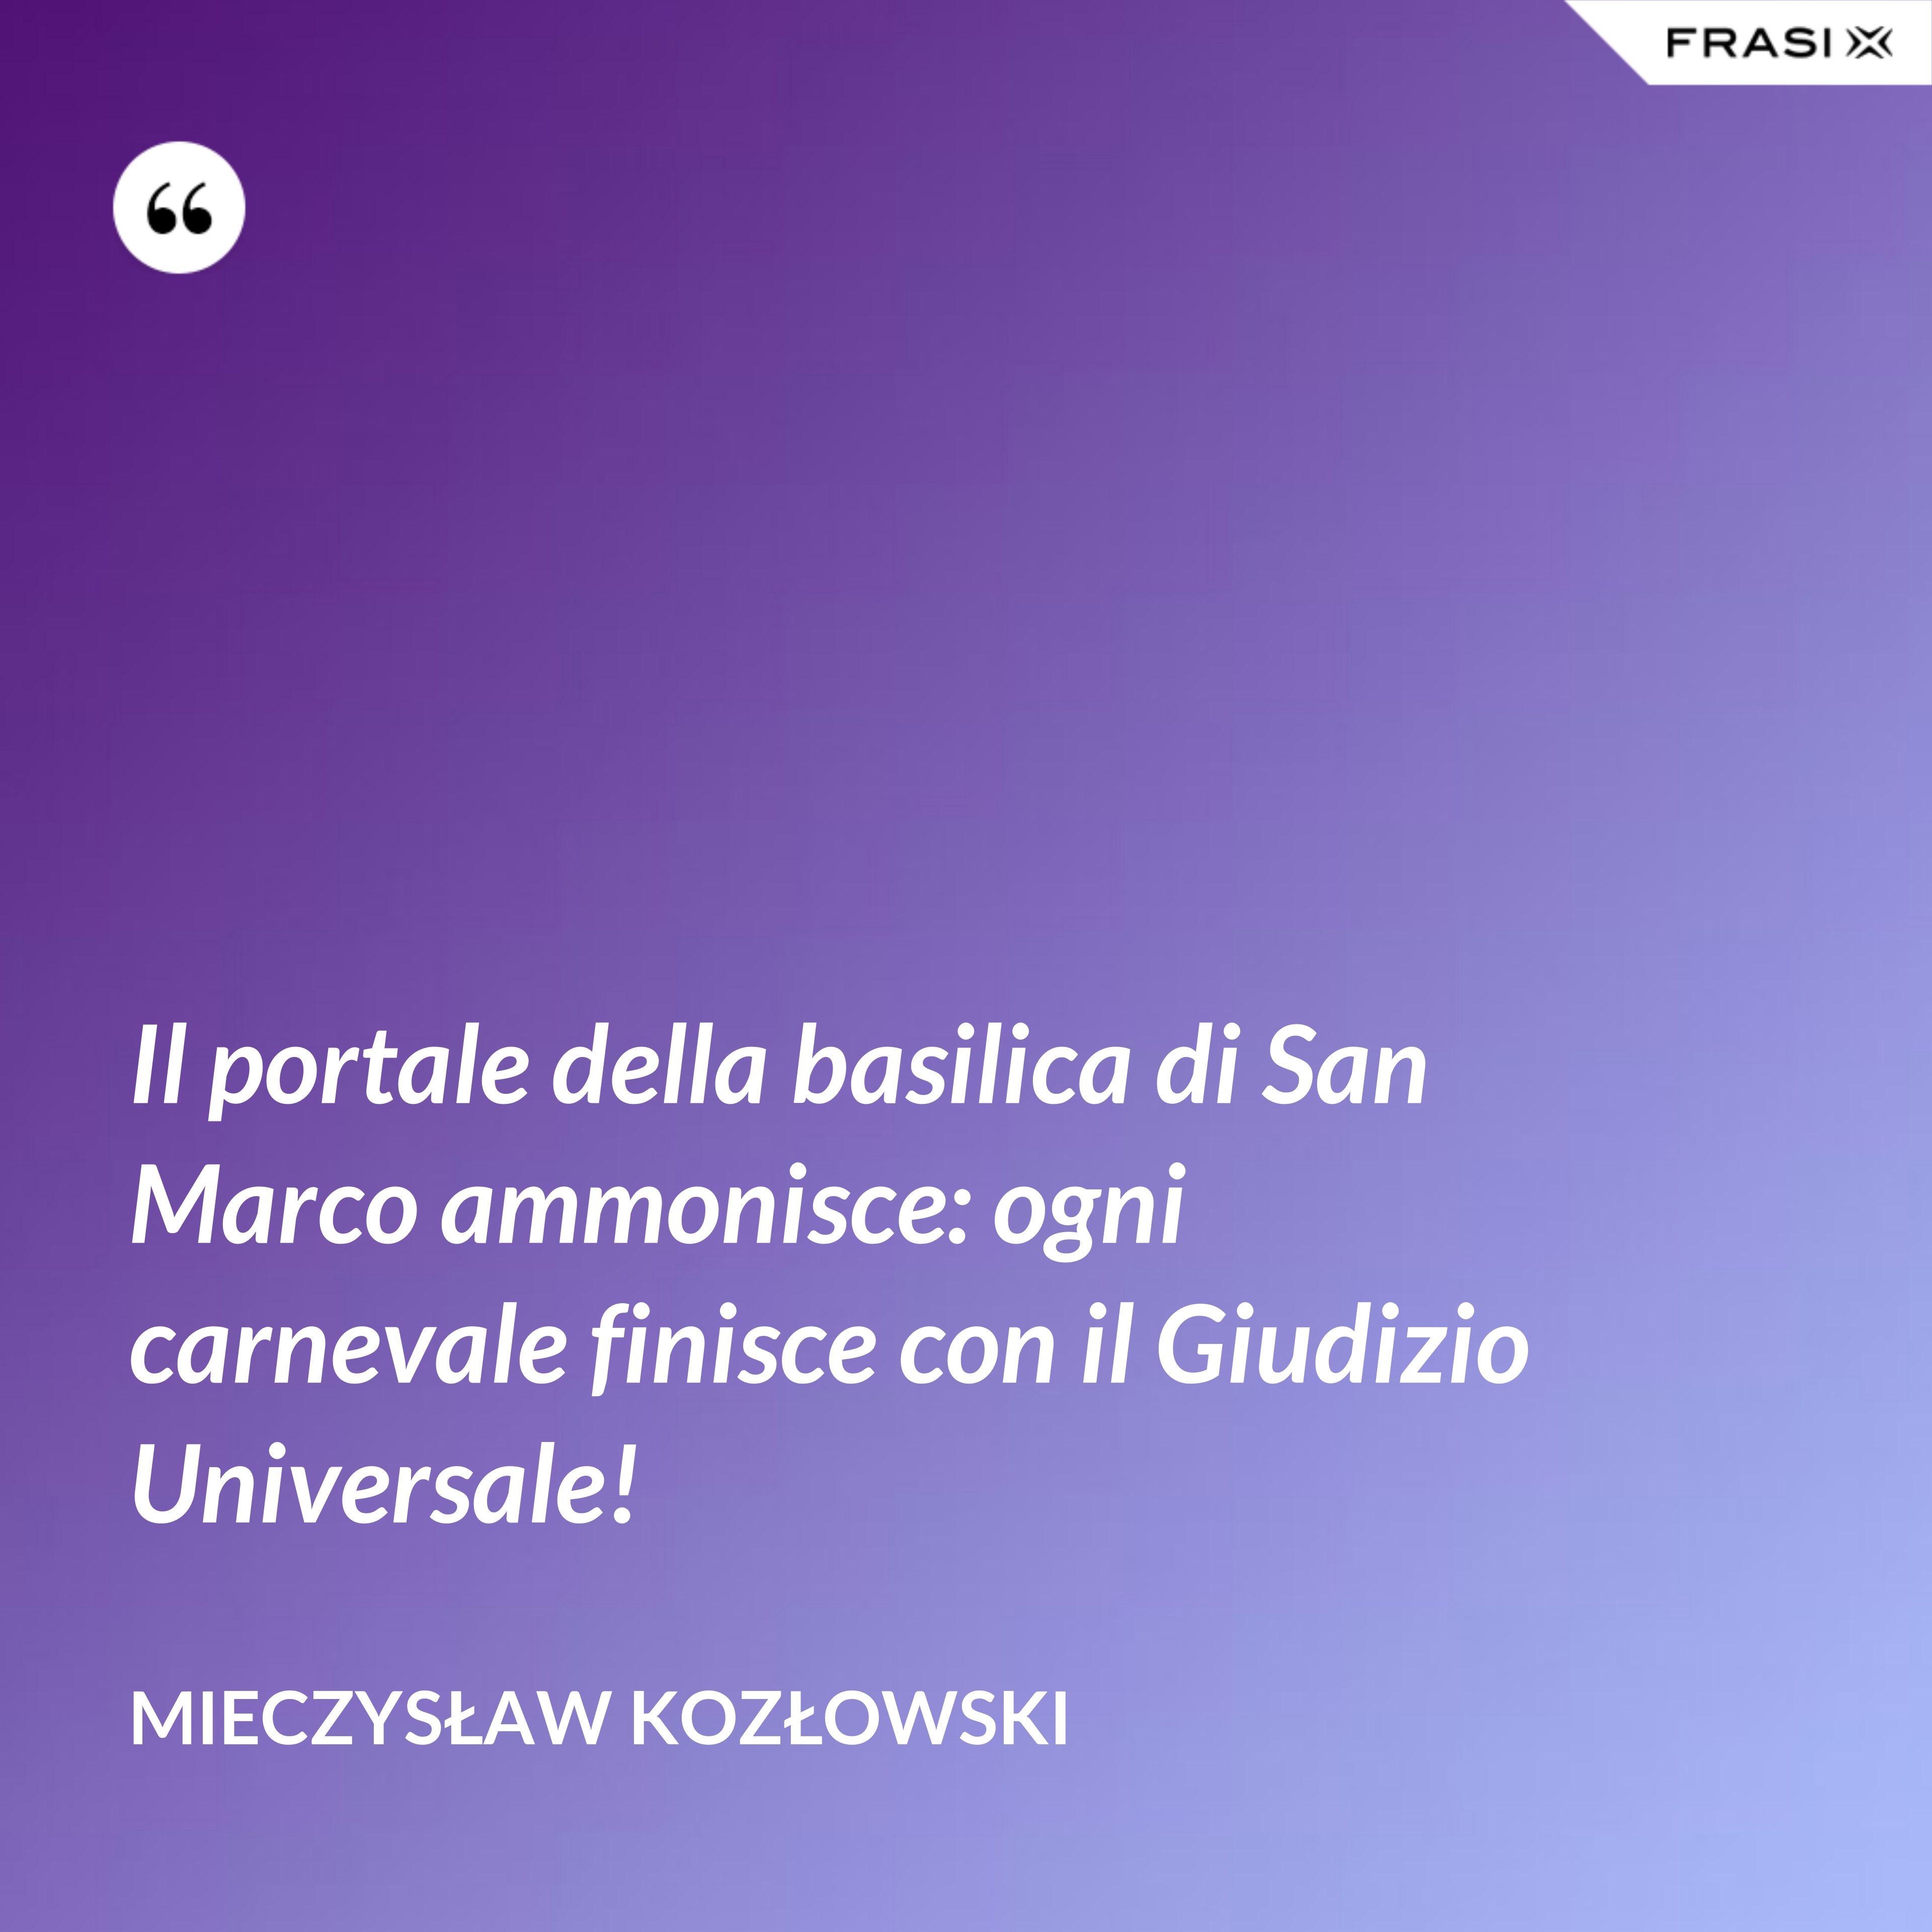 Il portale della basilica di San Marco ammonisce: ogni carnevale finisce con il Giudizio Universale! - Mieczysław Kozłowski